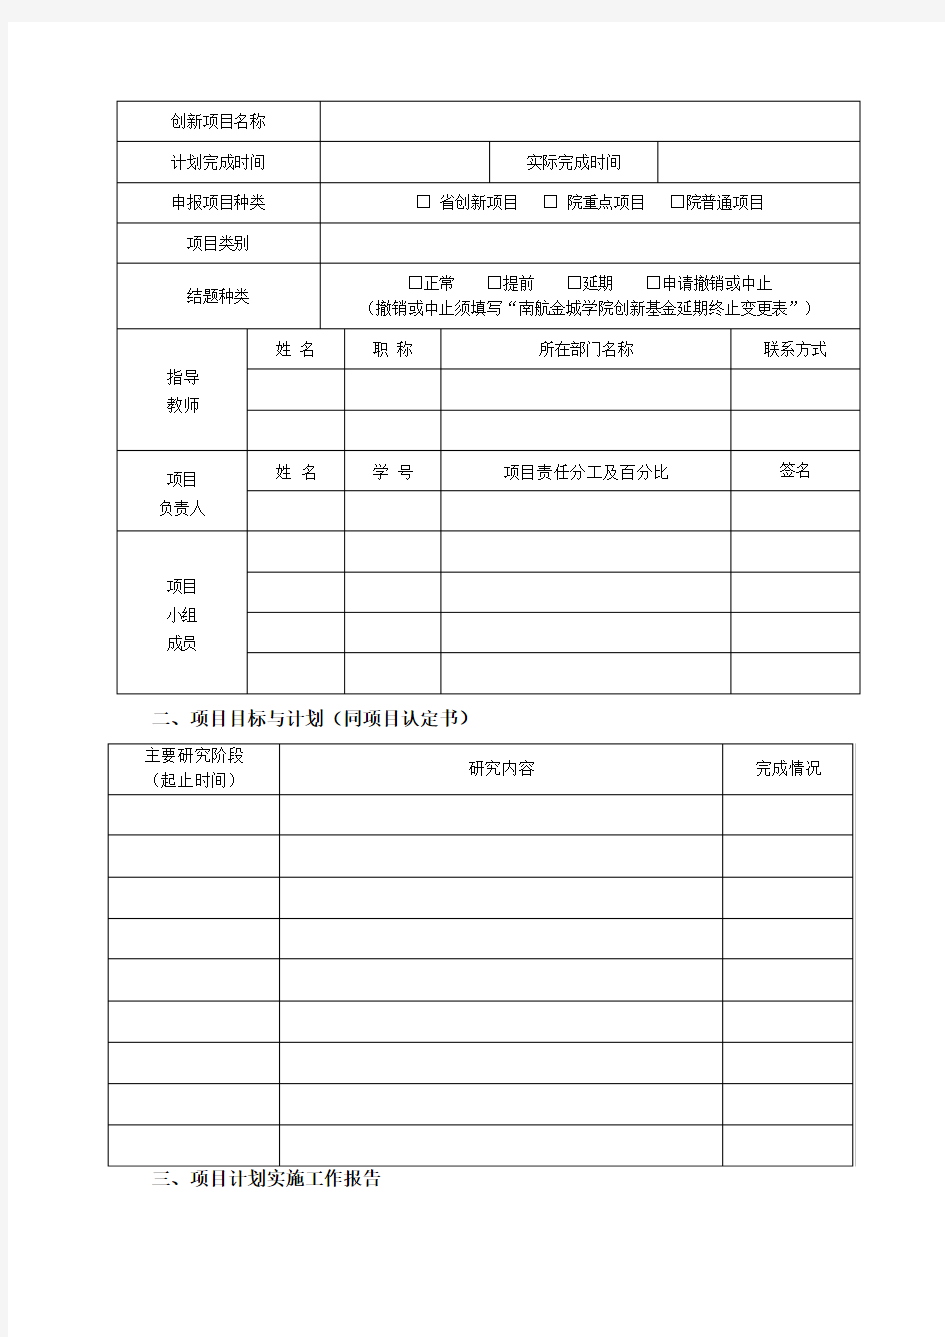 南京航空航天大学金城学院大学生创新基金项目结题报告书【模板】